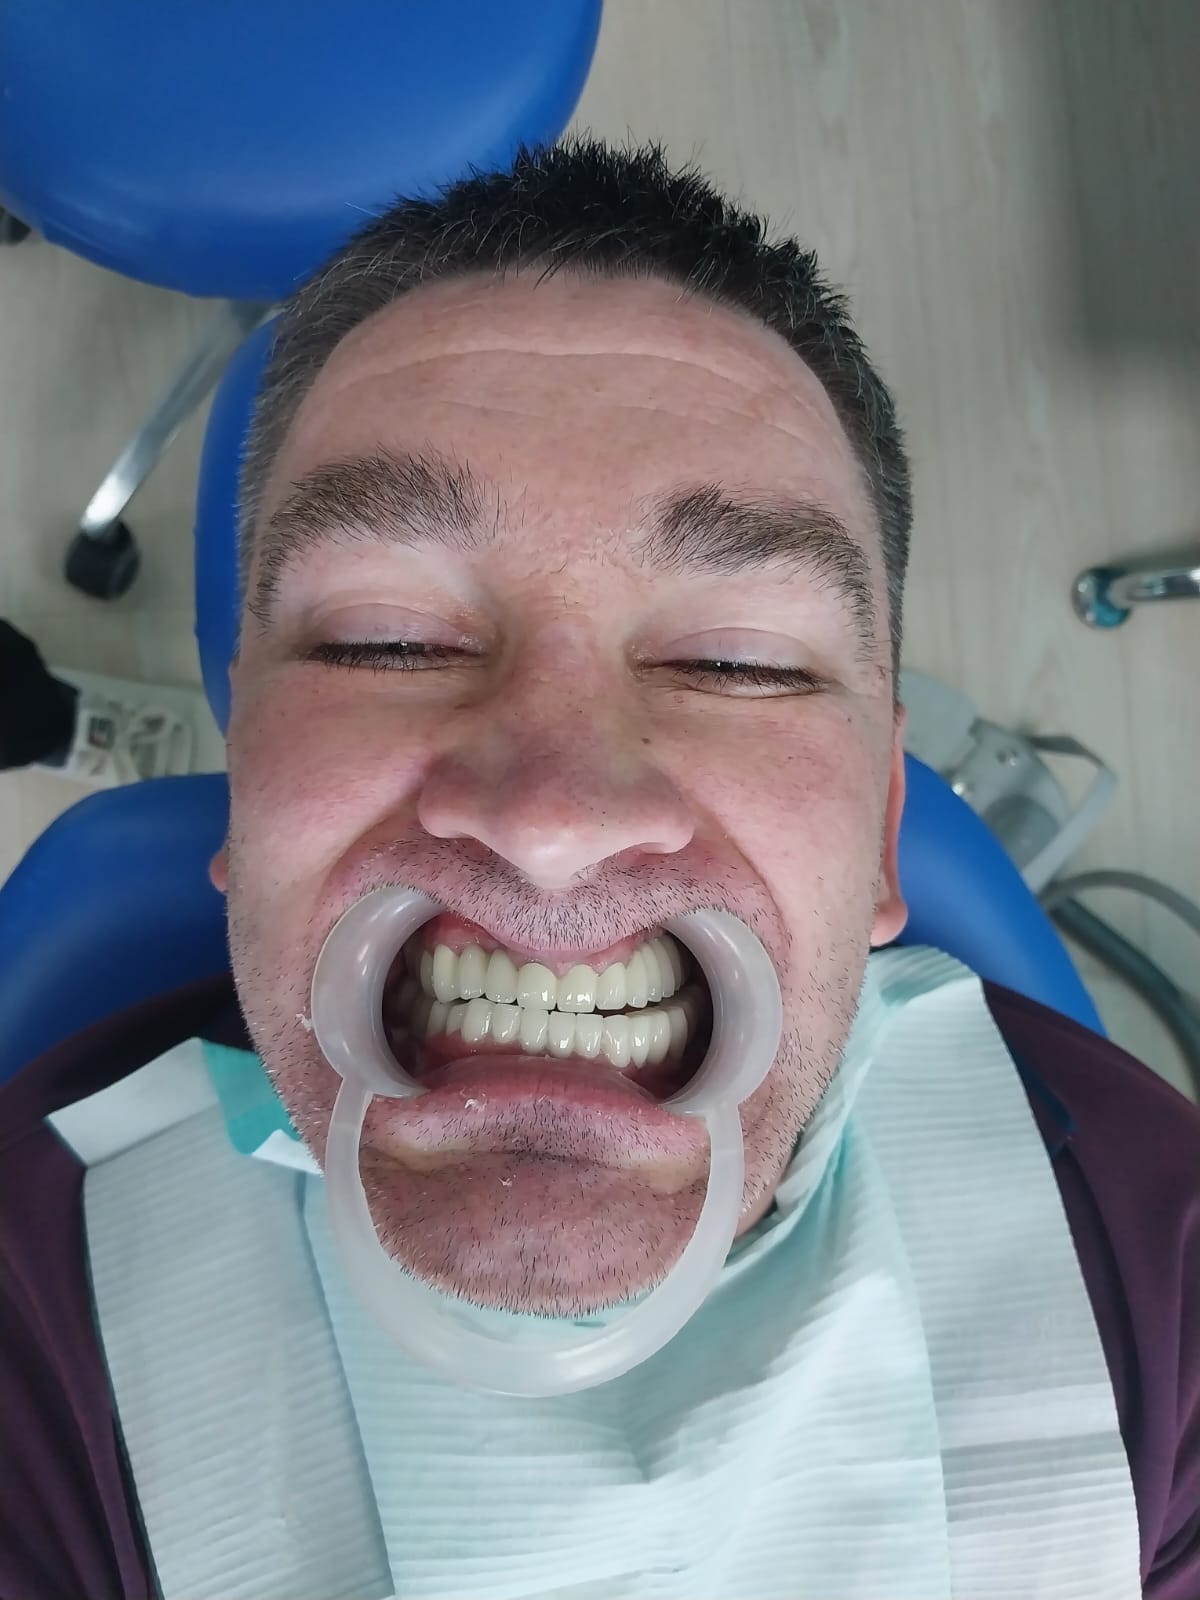 после протезирования зубов в Китае